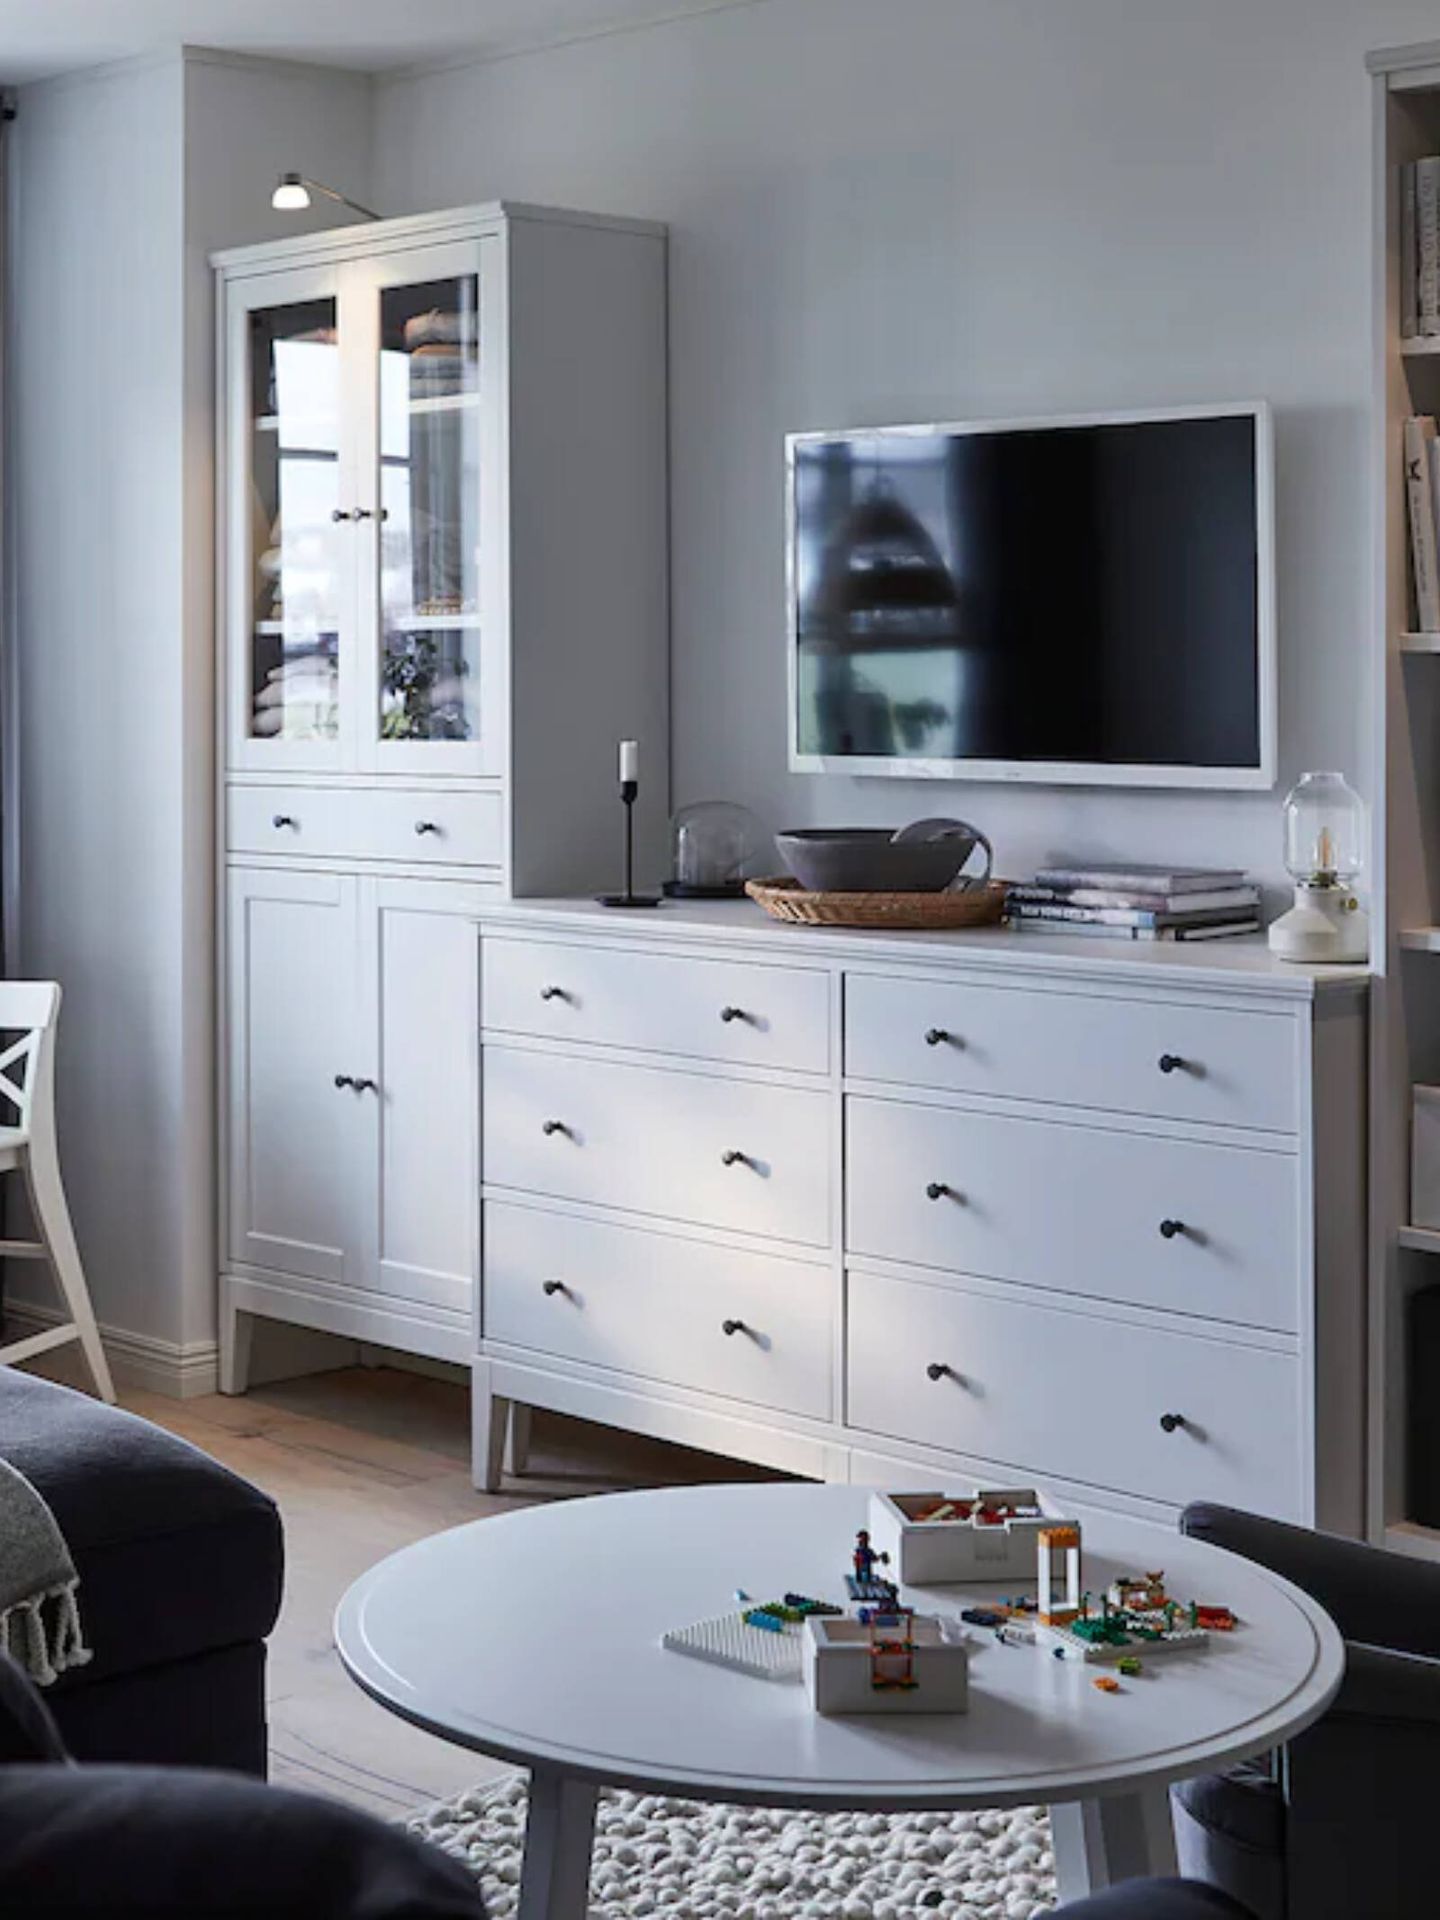 Nuevo mueble de Ikea para un dormitorio ordenado en una casa pequeña. (Cortesía/Ikea)